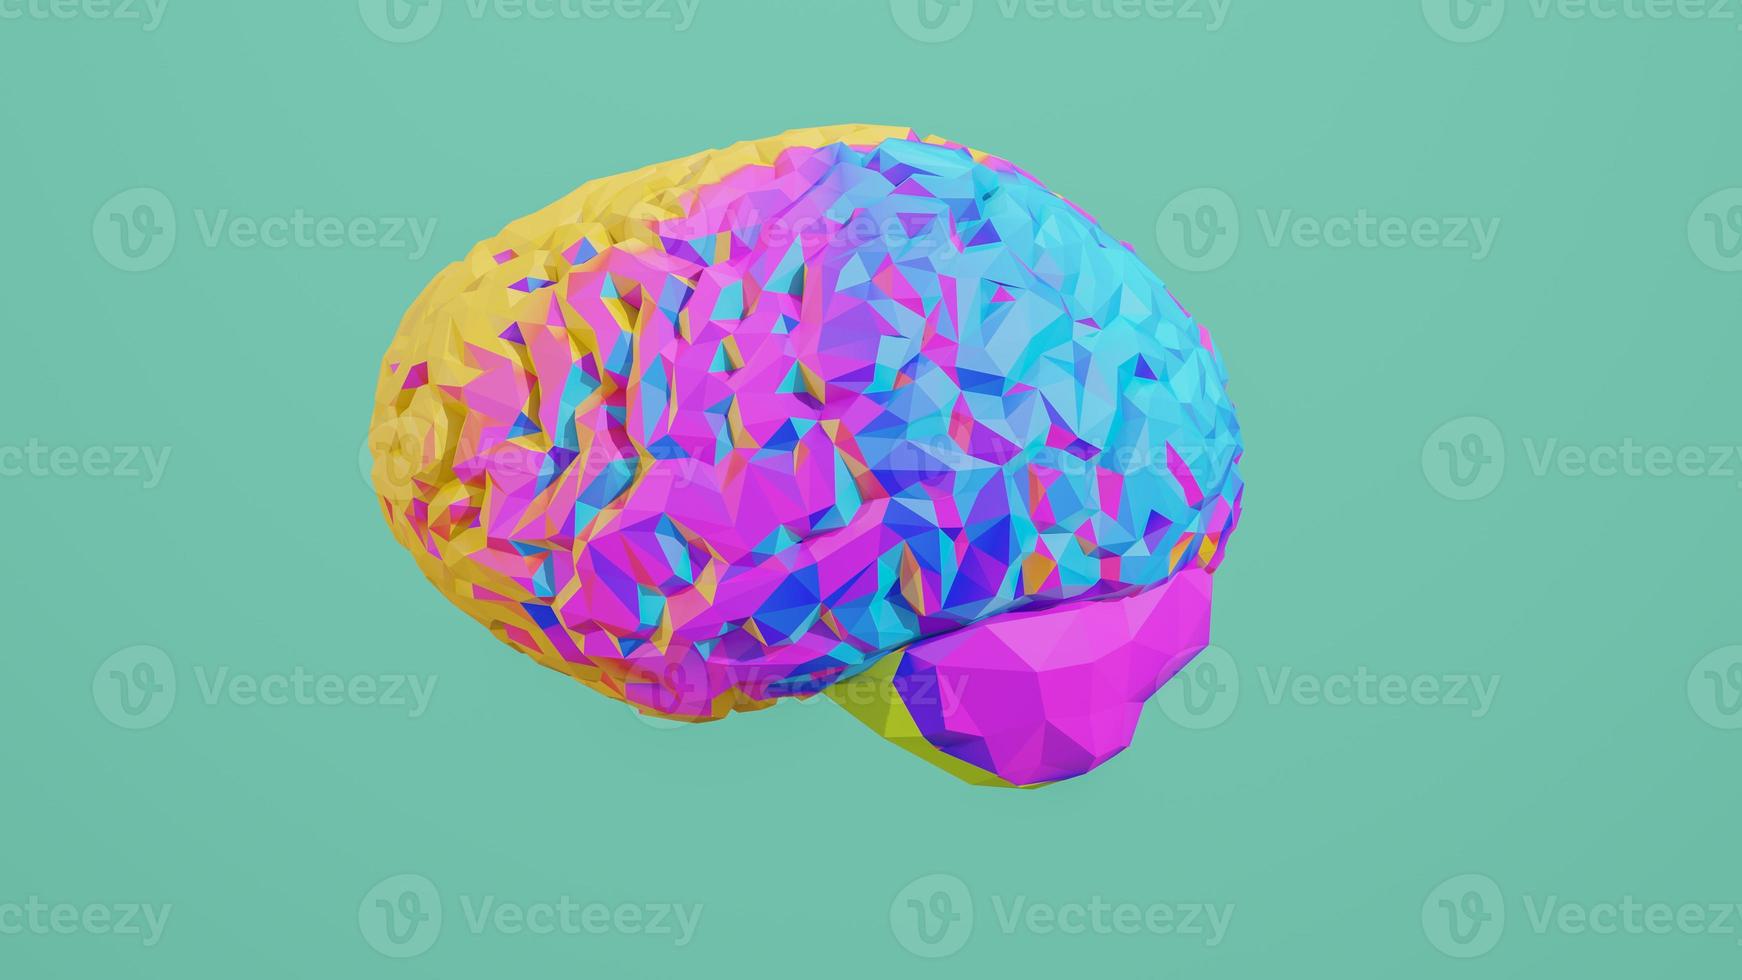 kleurrijke laag poly zijaanzicht hersenen 3d render geïsoleerd op background foto